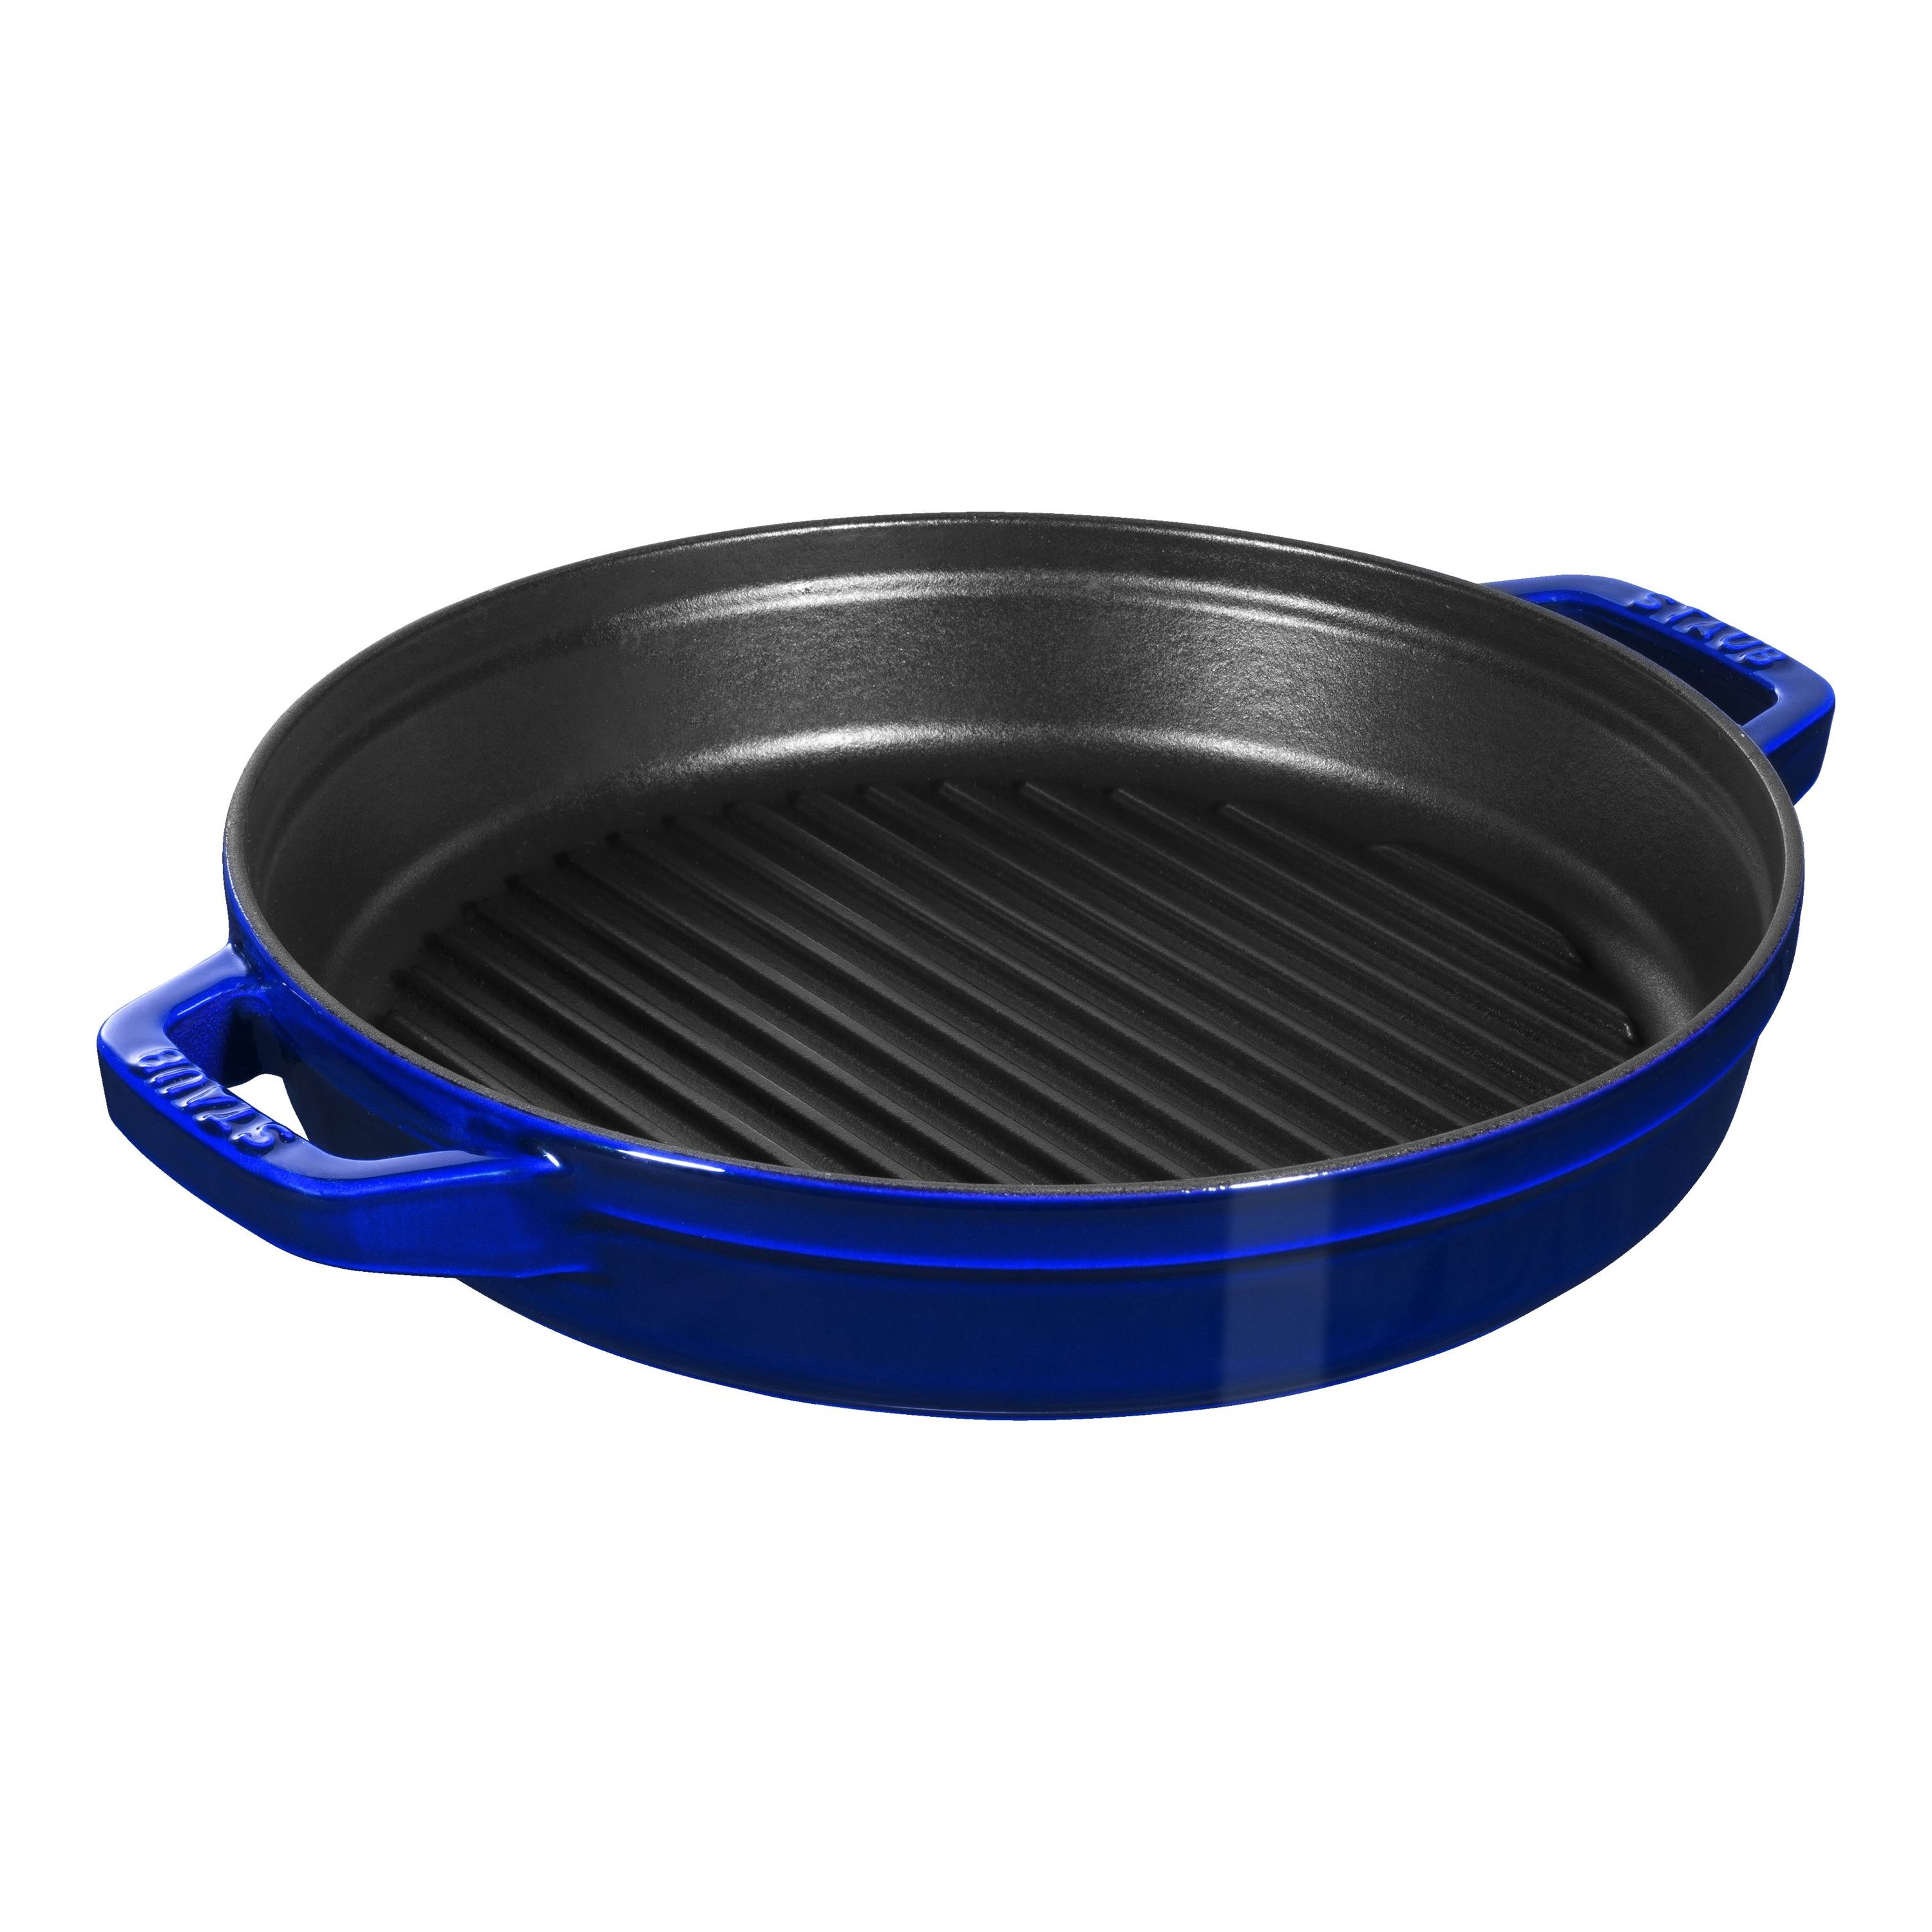 Staub Dark Blue 4-Piece Stackable Cookware Set + Reviews